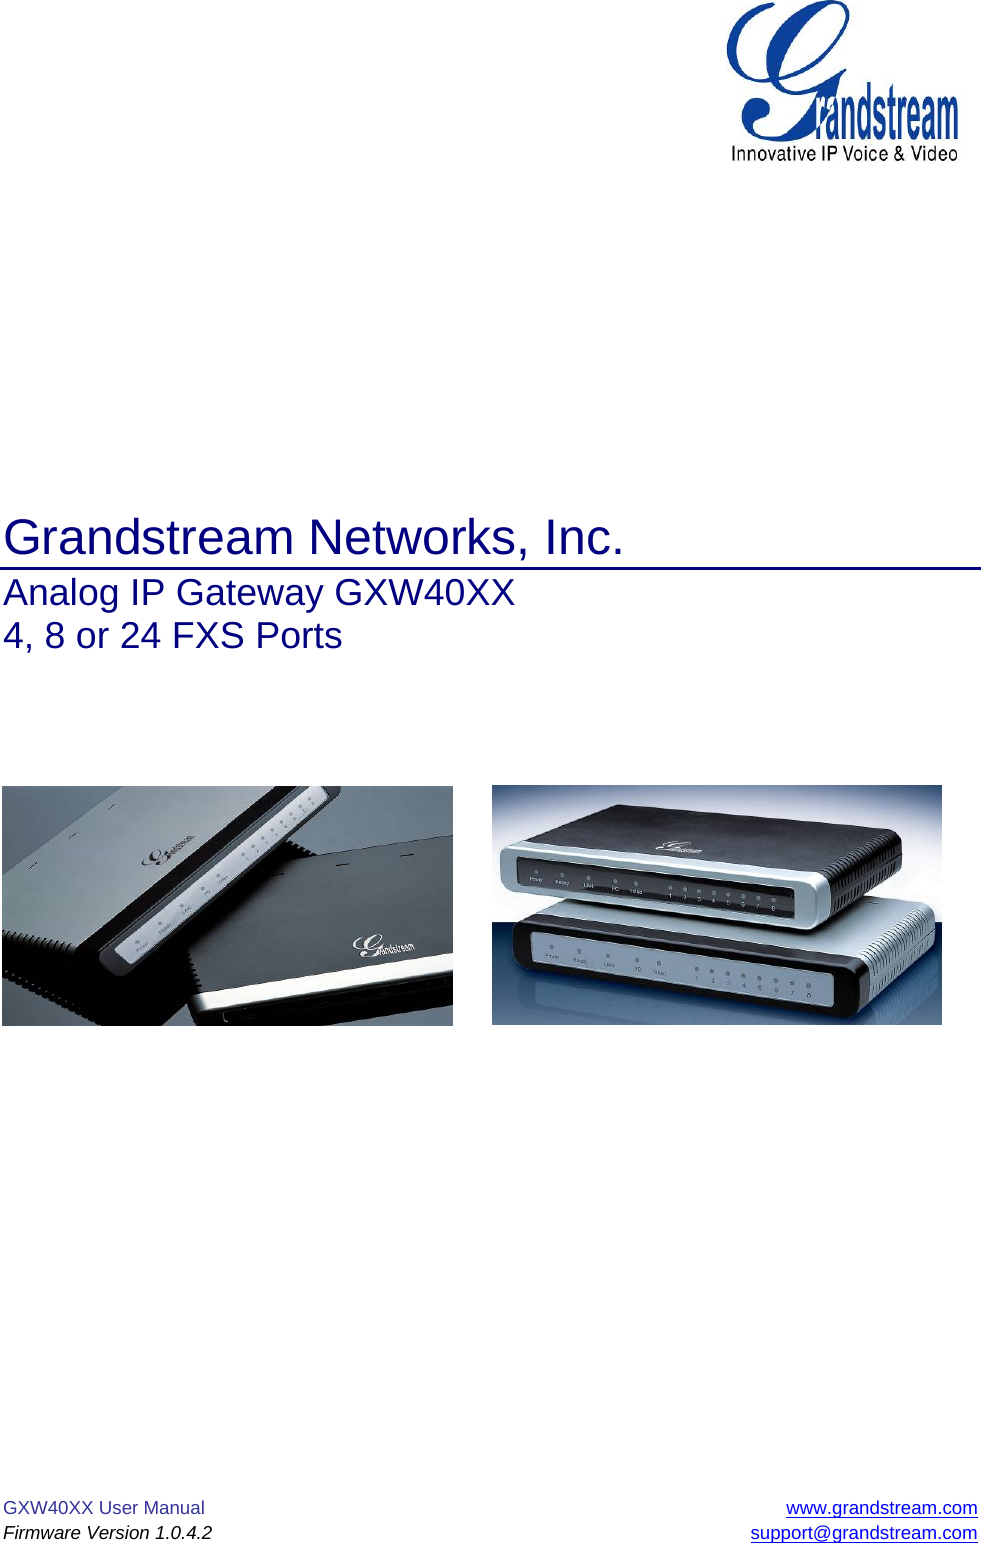 GXW40XX User Manual  www.grandstream.com Firmware Version 1.0.4.2 support@grandstream.com               Grandstream Networks, Inc. Analog IP Gateway GXW40XX  4, 8 or 24 FXS Ports                     